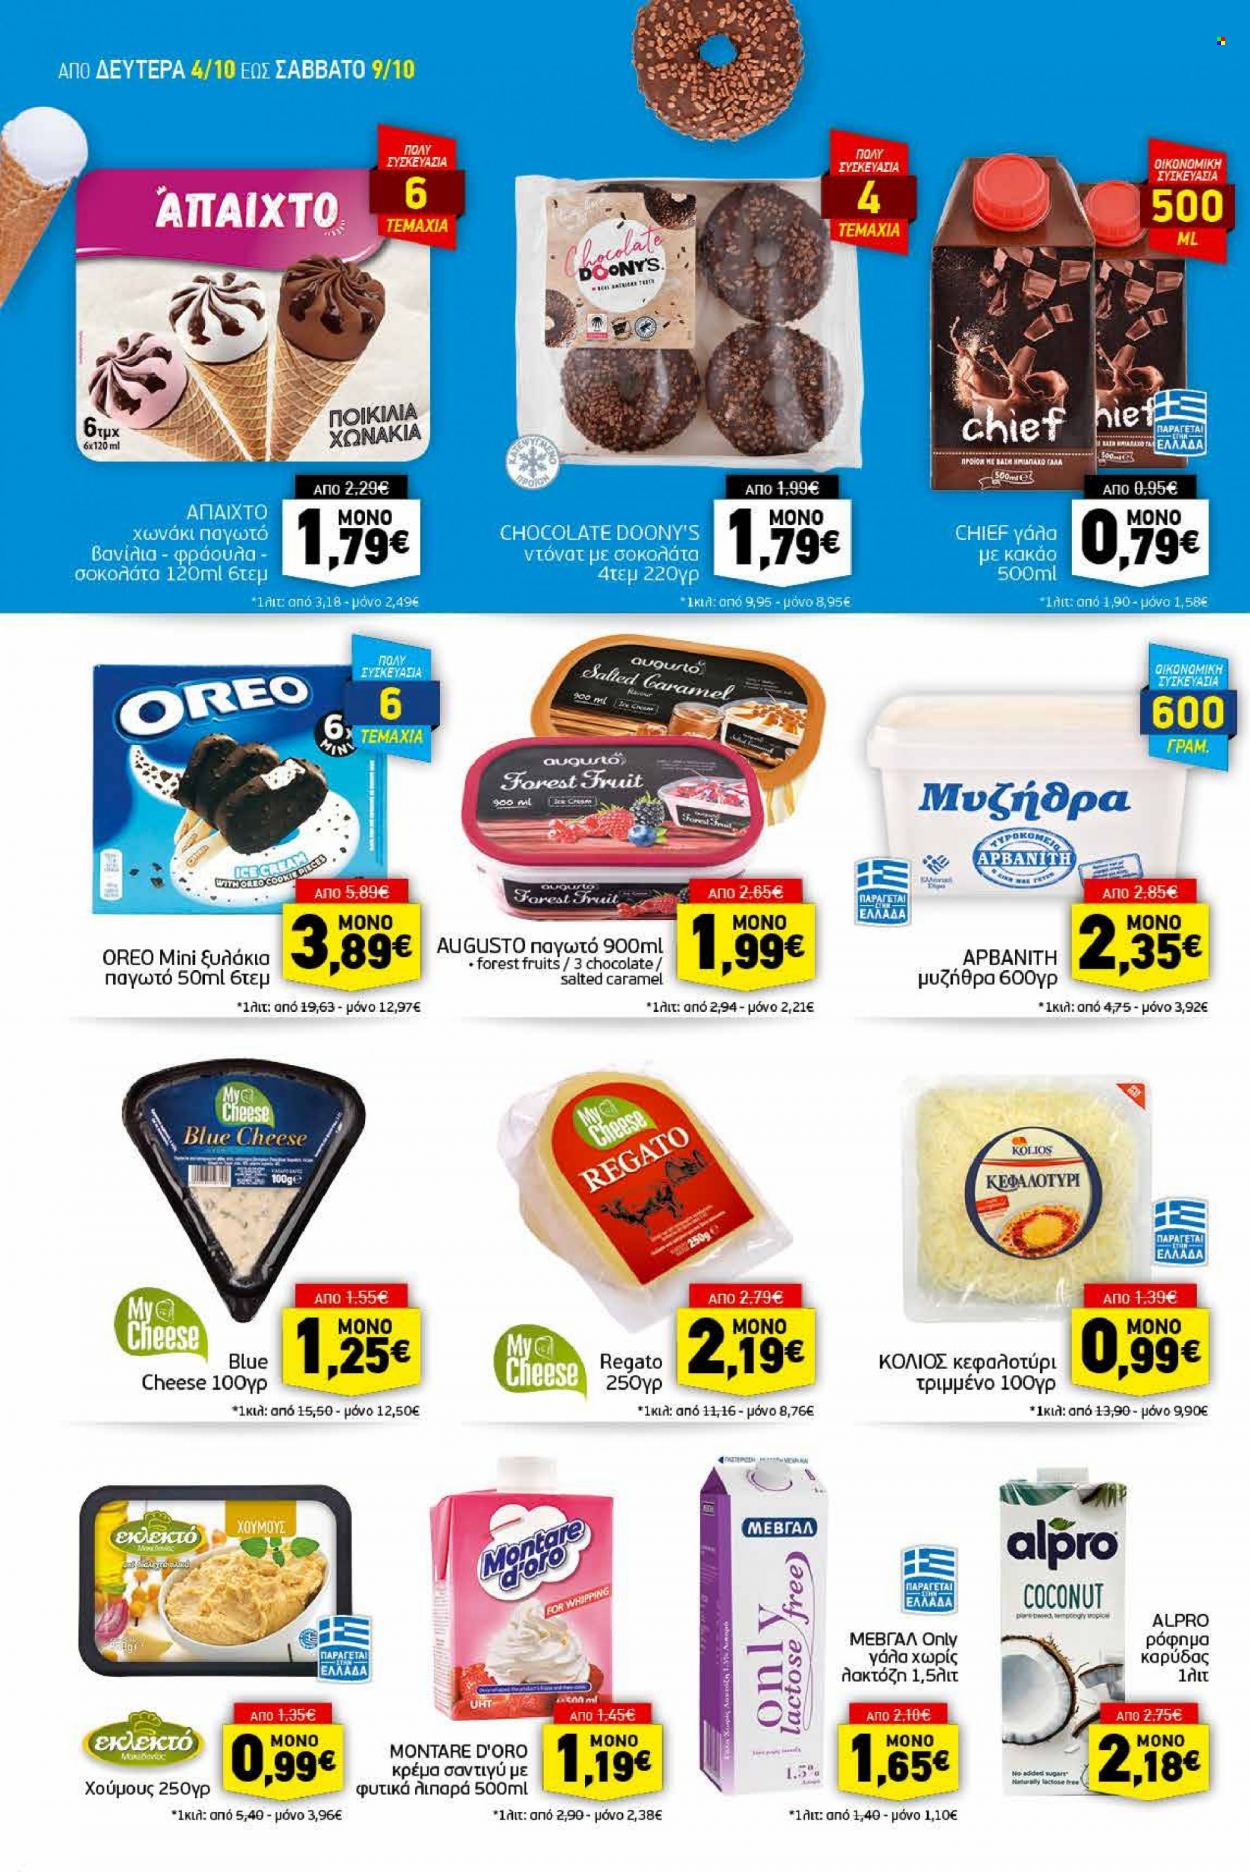 thumbnail - Φυλλάδια Discount Markt - 04.10.2021 - 09.10.2021 - Εκπτωτικά προϊόντα - χούμους, Oreo, σαντιγύ, παγωτό, σοκολάτα, κακάο. Σελίδα 4.